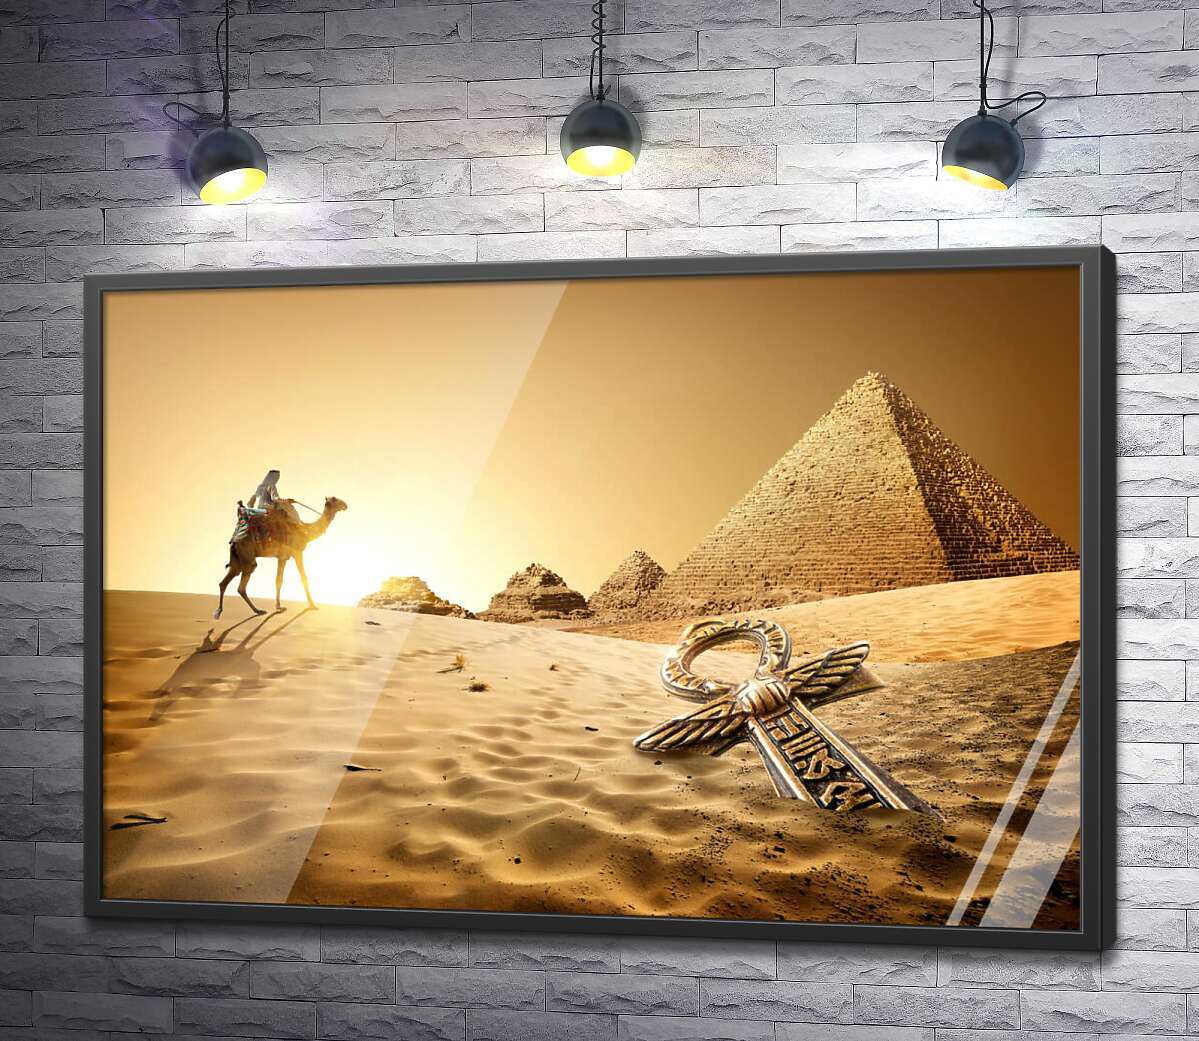 постер Символ життя - анх в пісках пустелі на фоні єгипетських пірамід